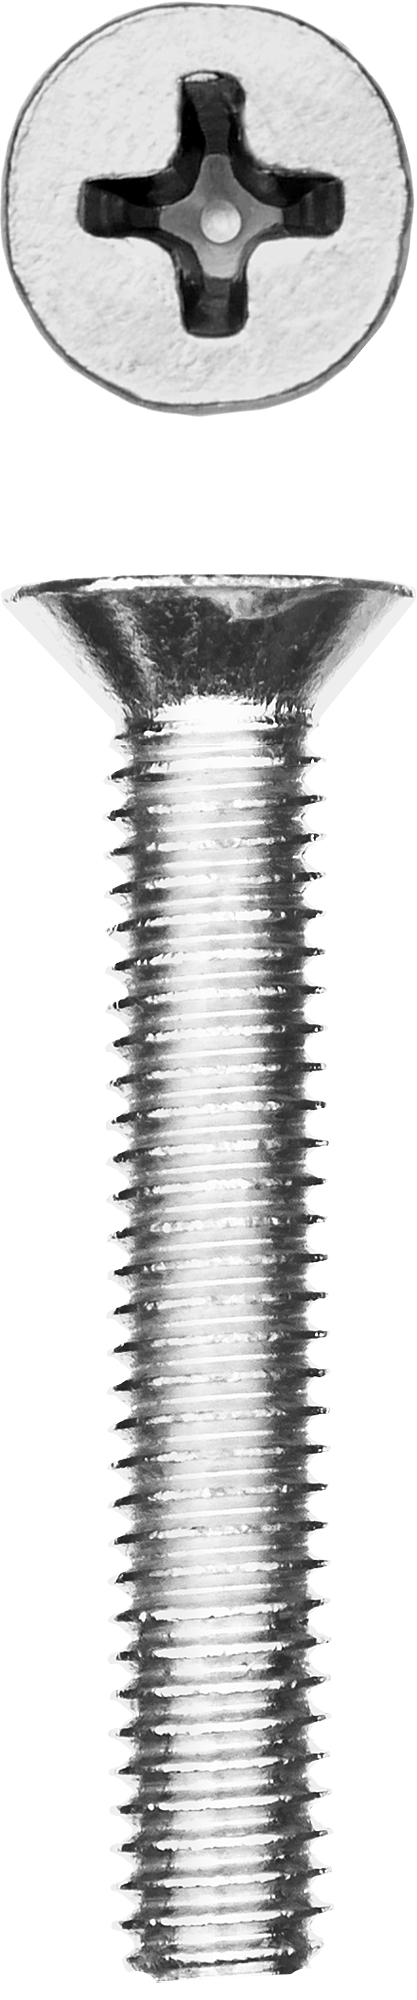 Винт с потайной головкой Зубр 303116-04-030, М4, 3 см, 965 DIN, 4 мм, оцинкованная сталь, 13 шт., фасовка (303116-04-030)